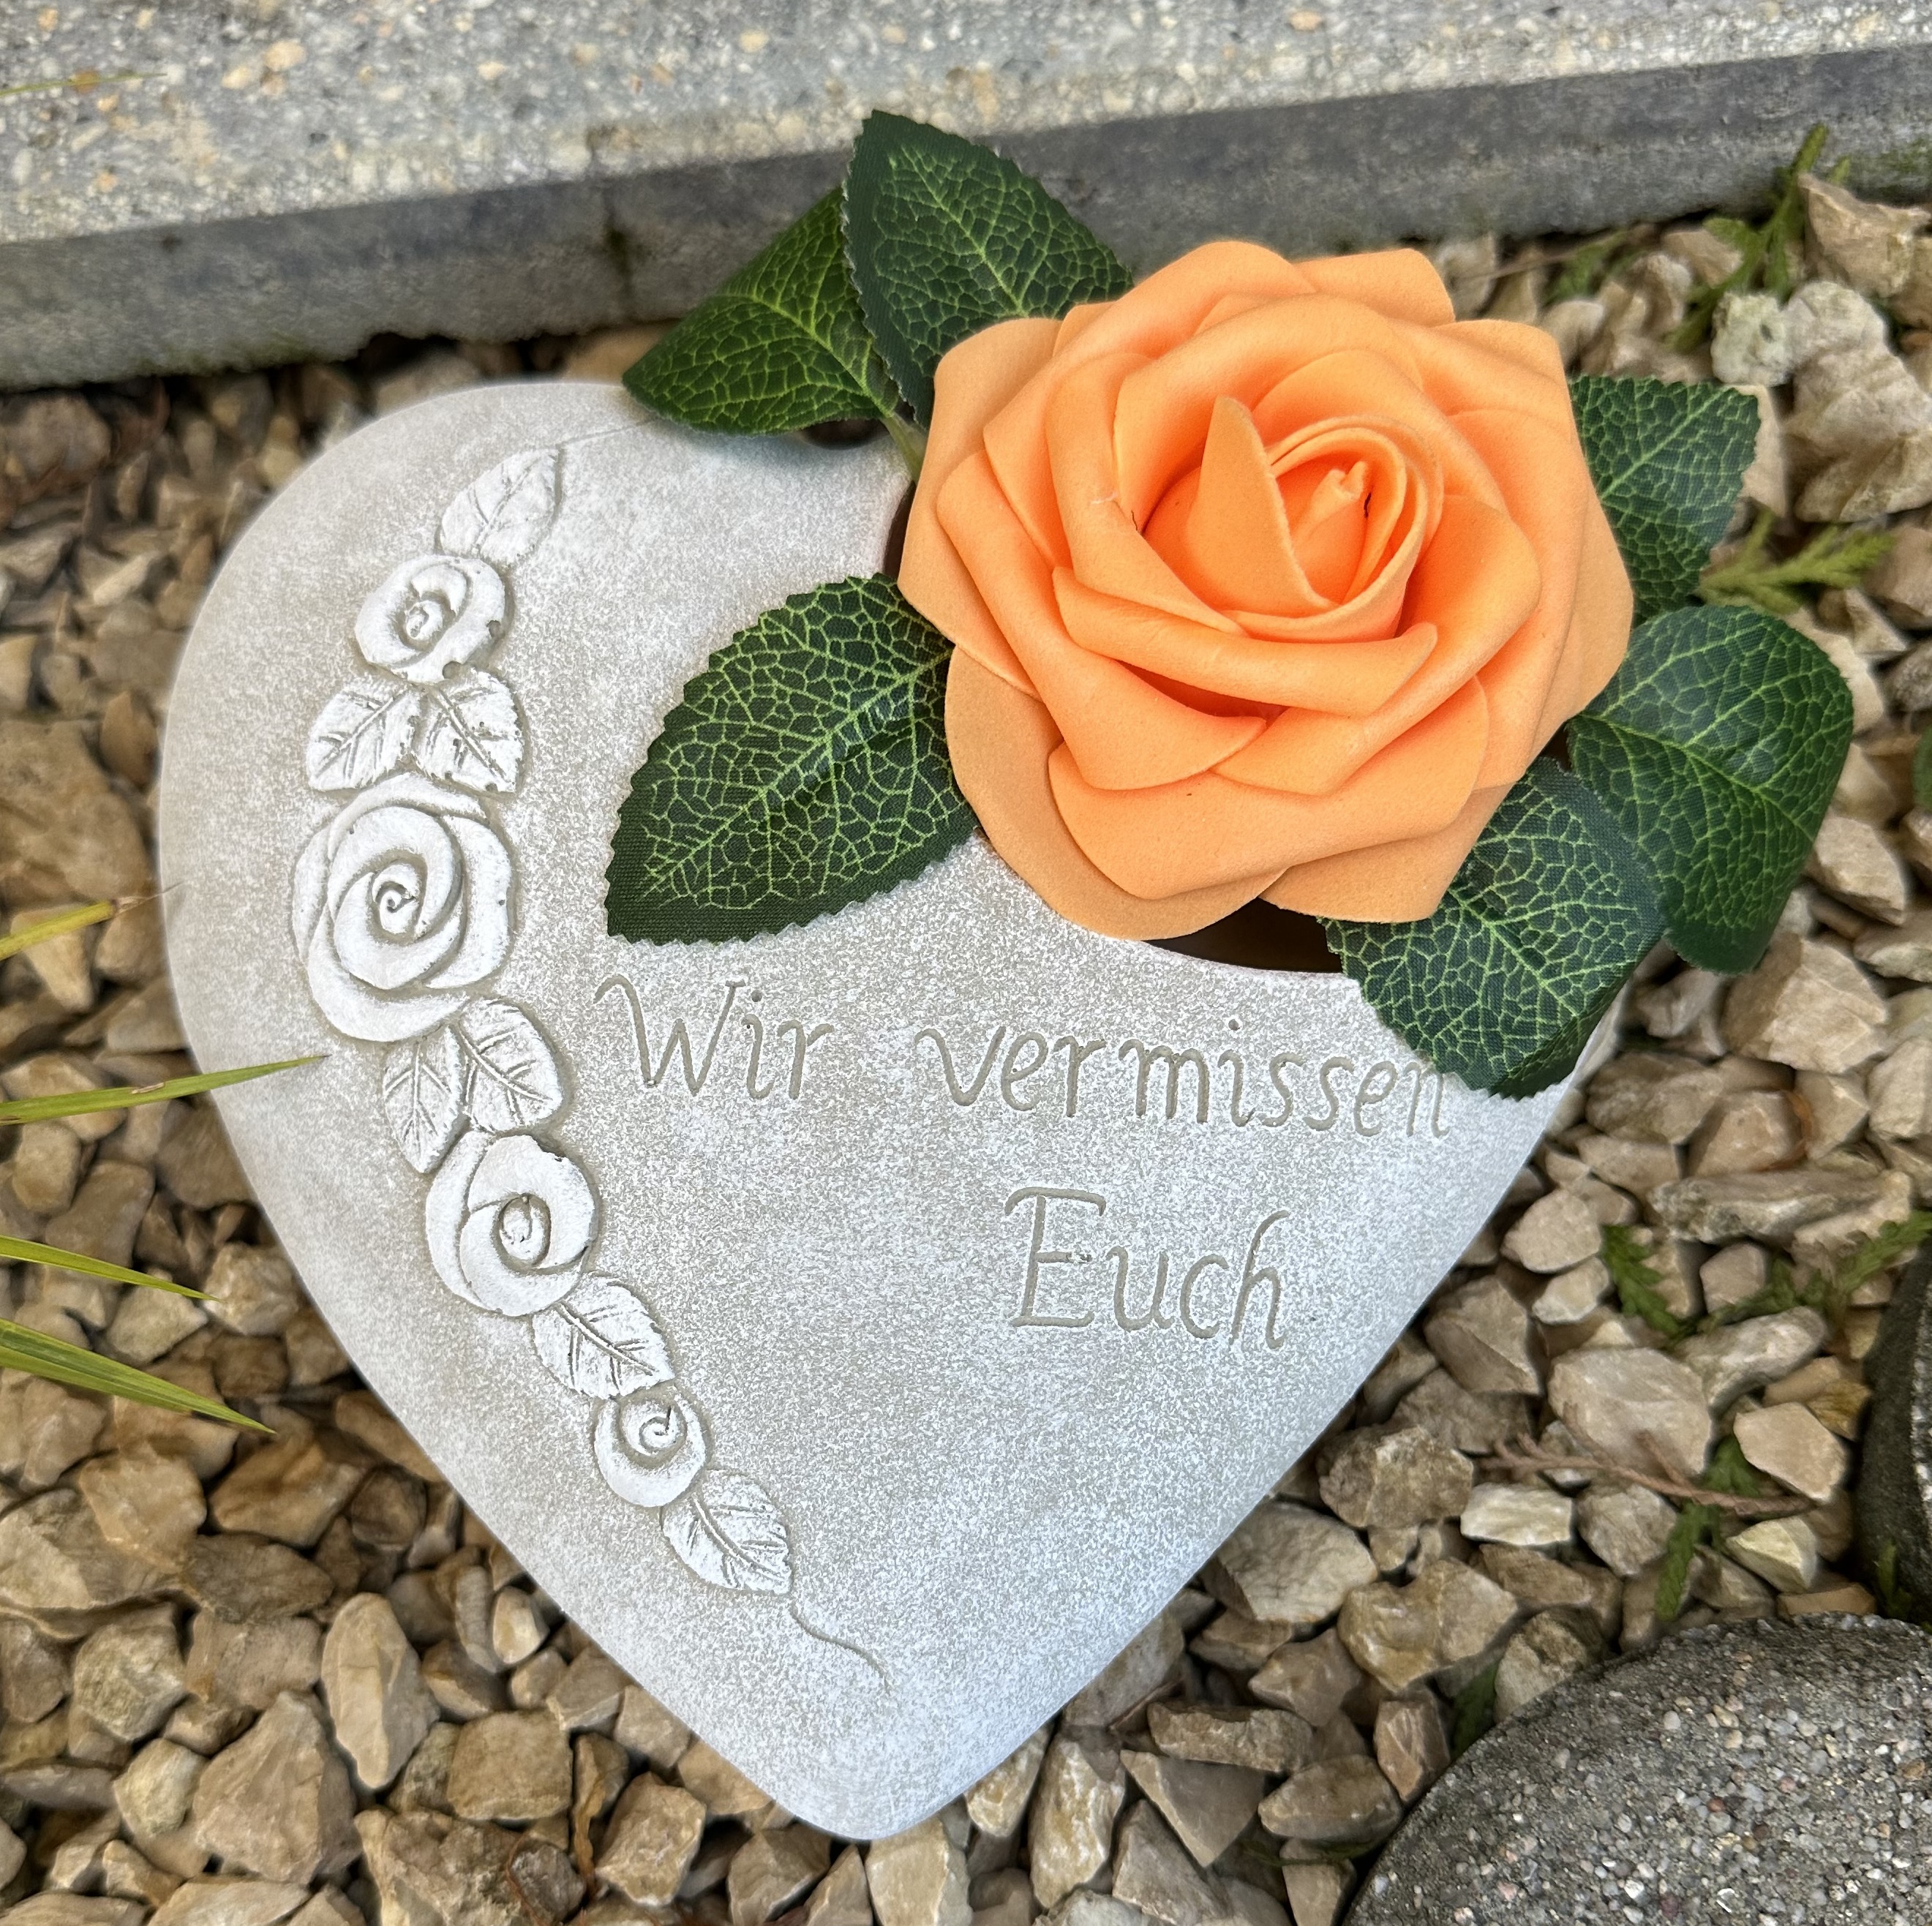 Grabherz Rosenranke - Wir vermissen Euch - Grabschmuck Gedenkstein Trauerherz für  Grablicht weiß 1,8 kg